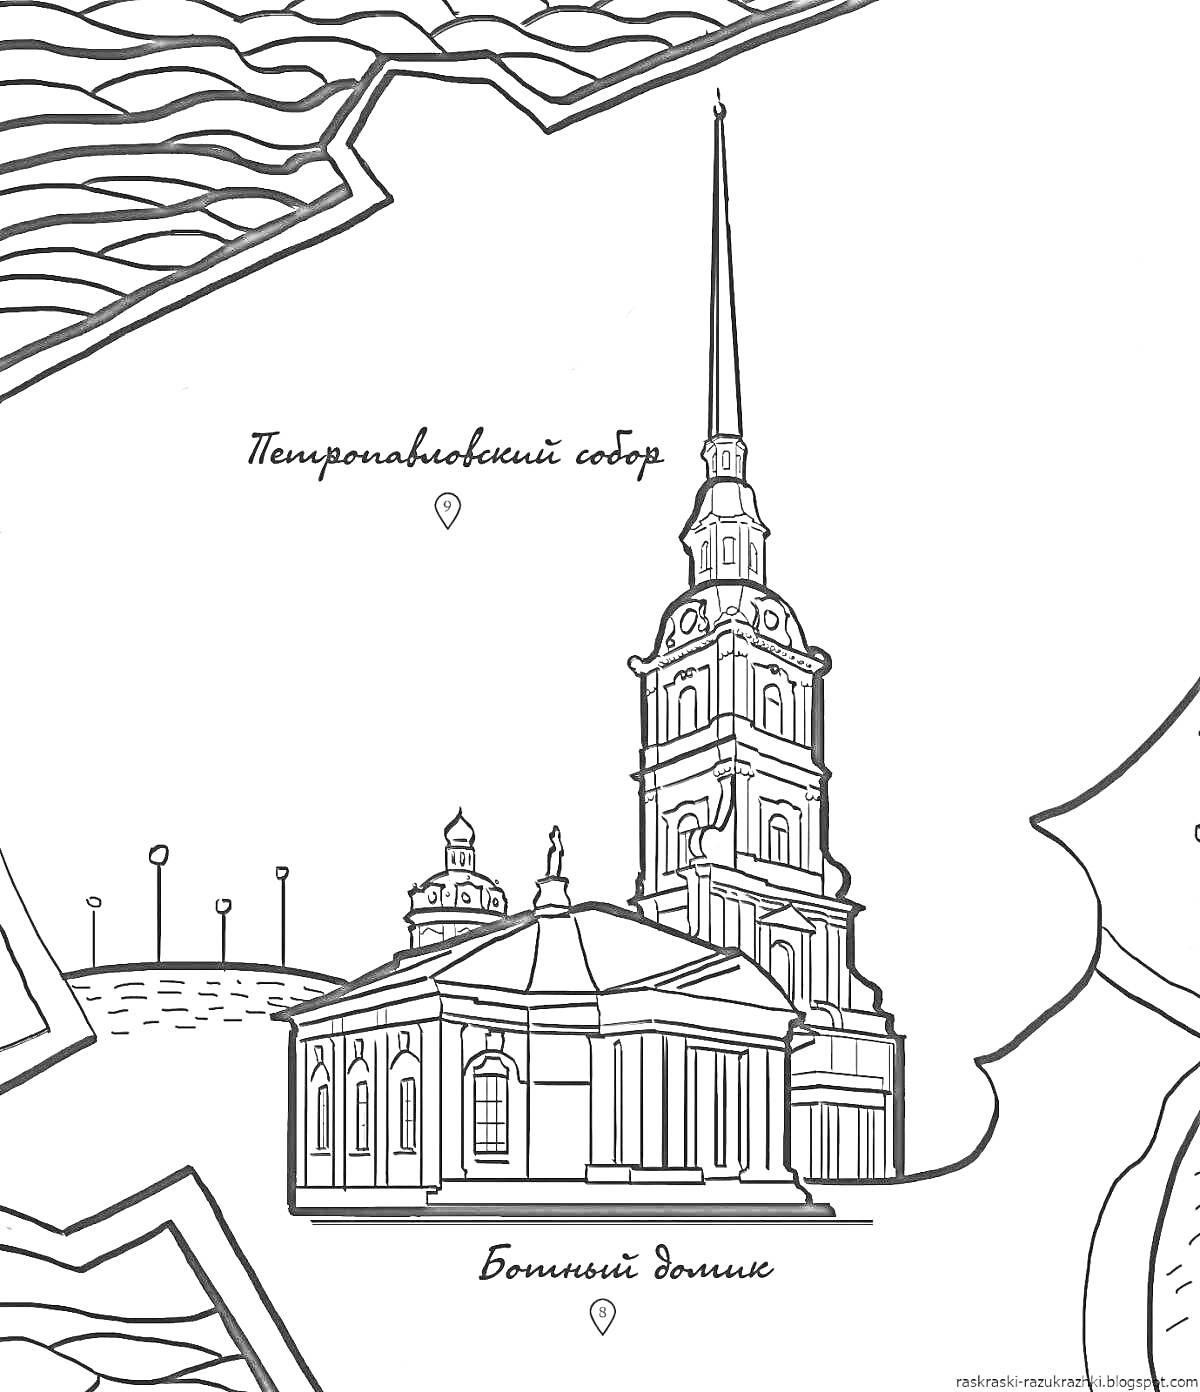 Раскраска Петропавловский собор на фоне карты с обозначенными элементами